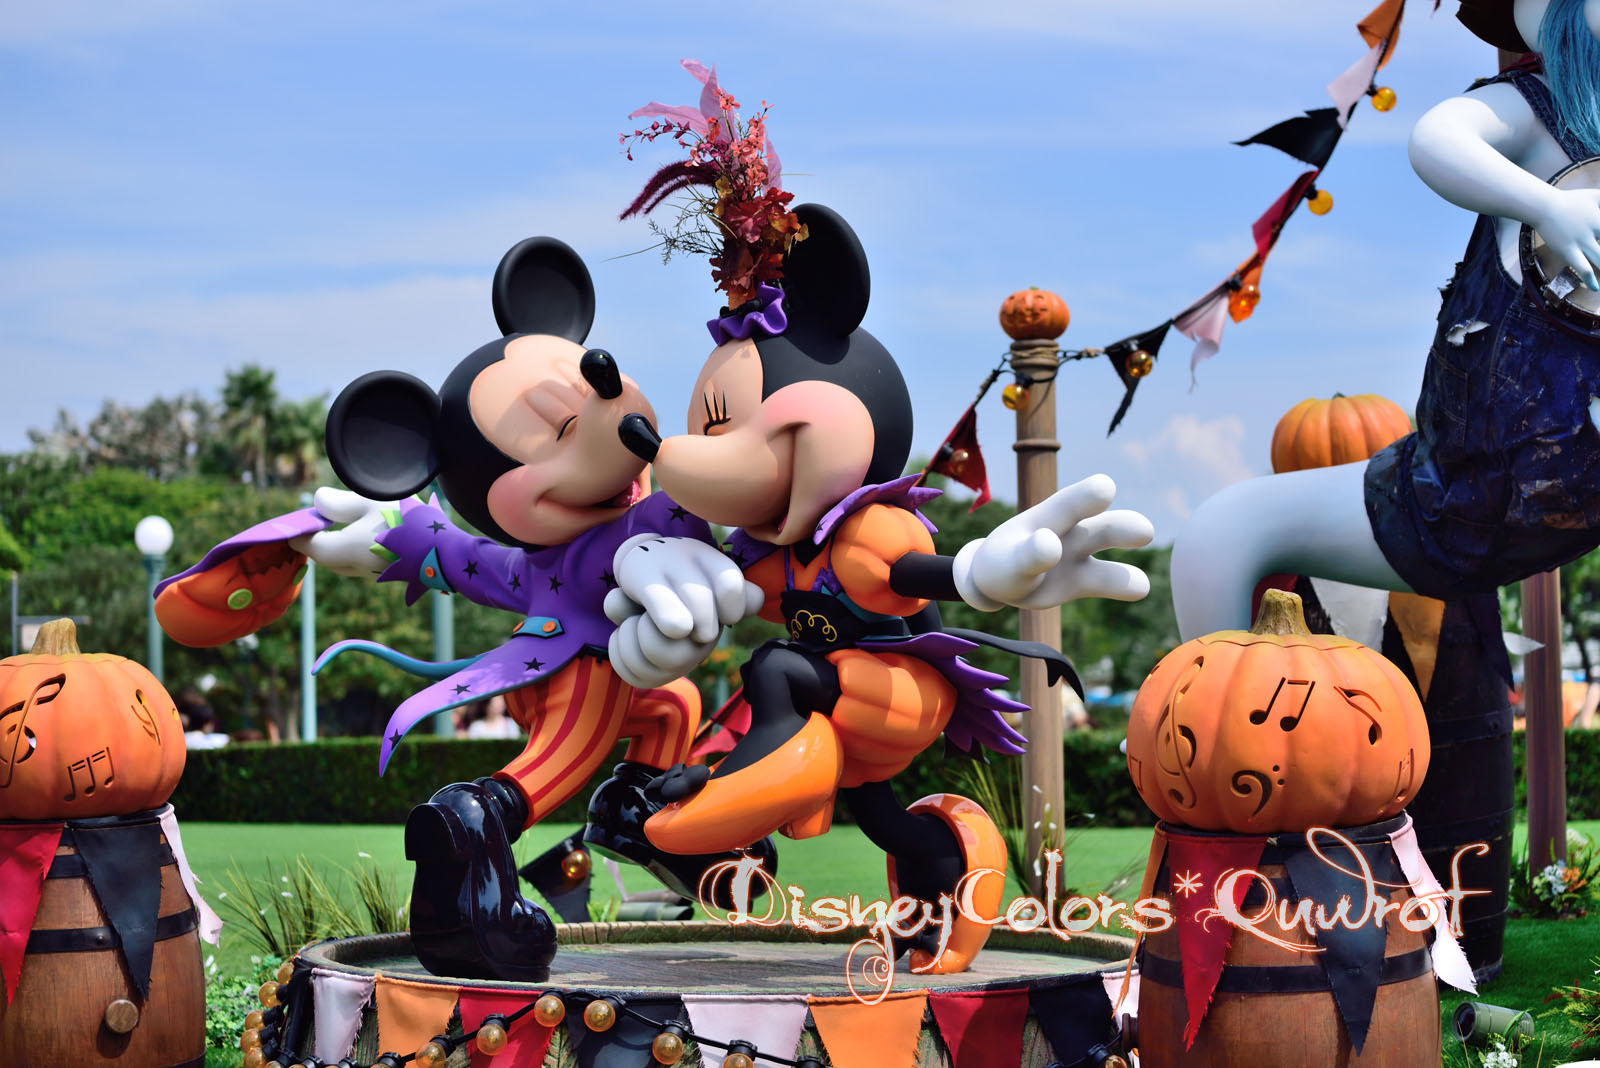 ディズニーシー 14th Anniversary 15年9月4日のインレポ Disney Colors Blog